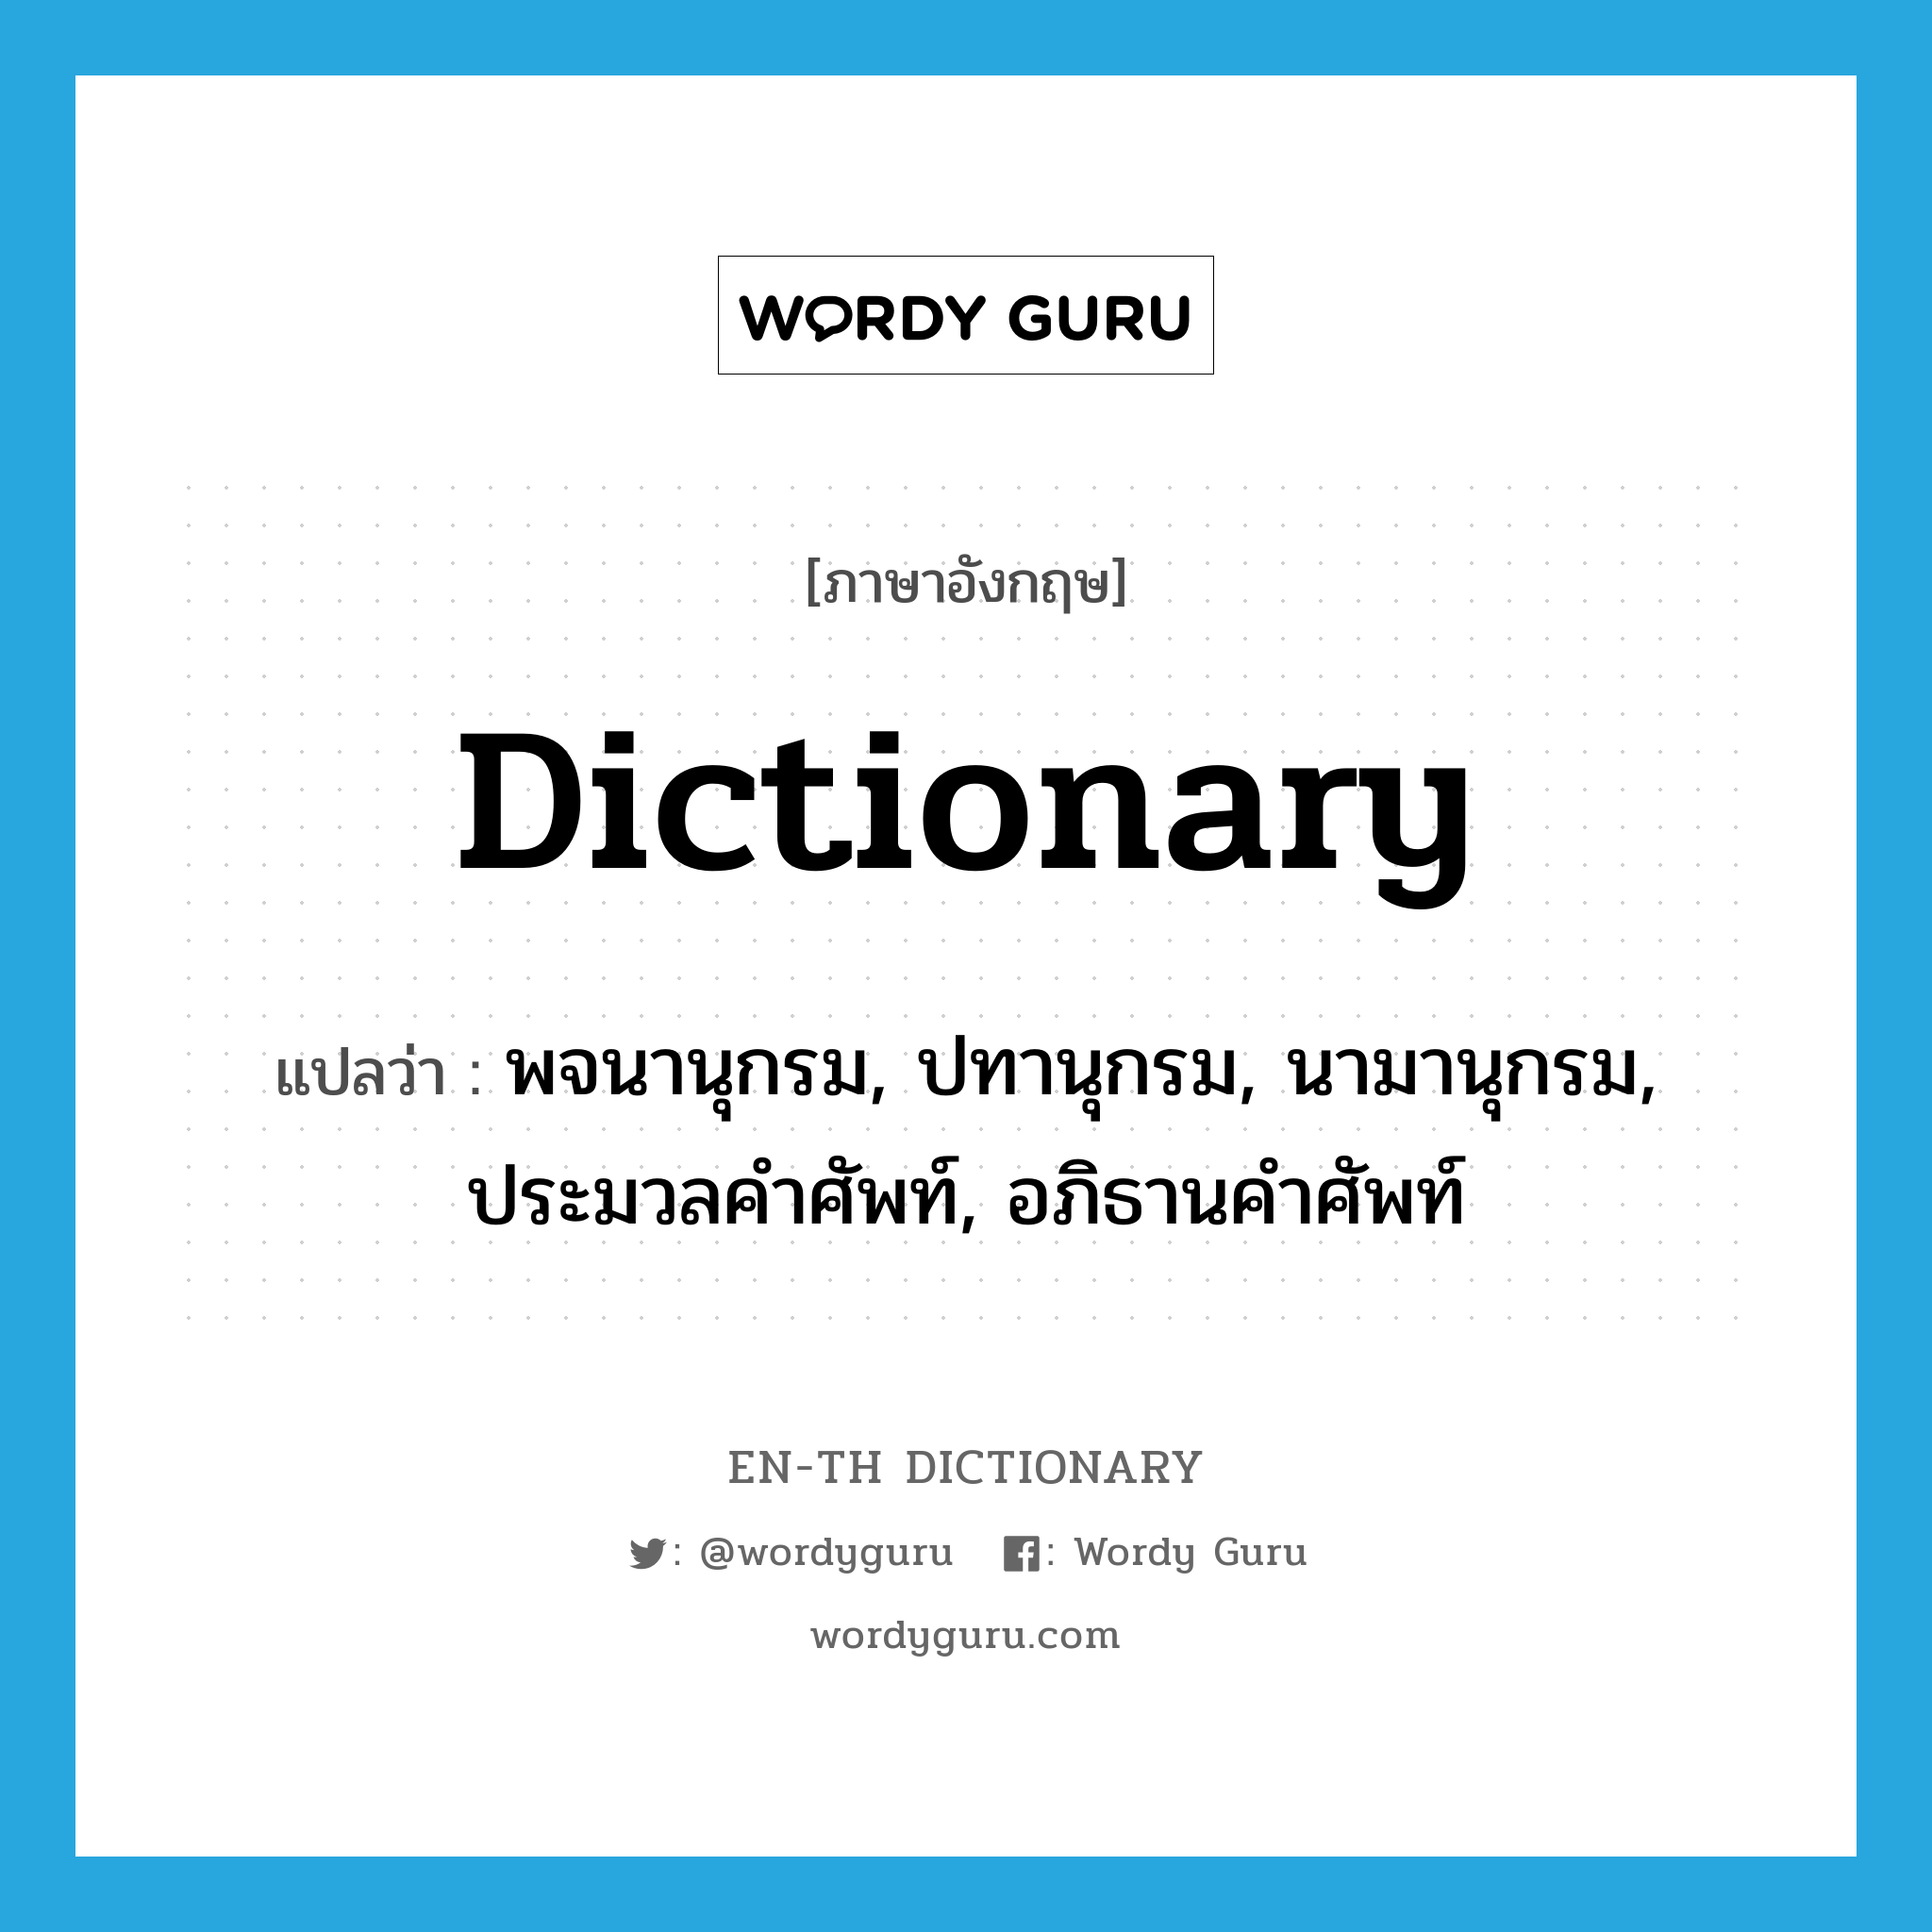 พจนานุกรม, ปทานุกรม, นามานุกรม, ประมวลคำศัพท์, อภิธานคำศัพท์ ภาษาอังกฤษ?, คำศัพท์ภาษาอังกฤษ พจนานุกรม, ปทานุกรม, นามานุกรม, ประมวลคำศัพท์, อภิธานคำศัพท์ แปลว่า dictionary ประเภท N หมวด N